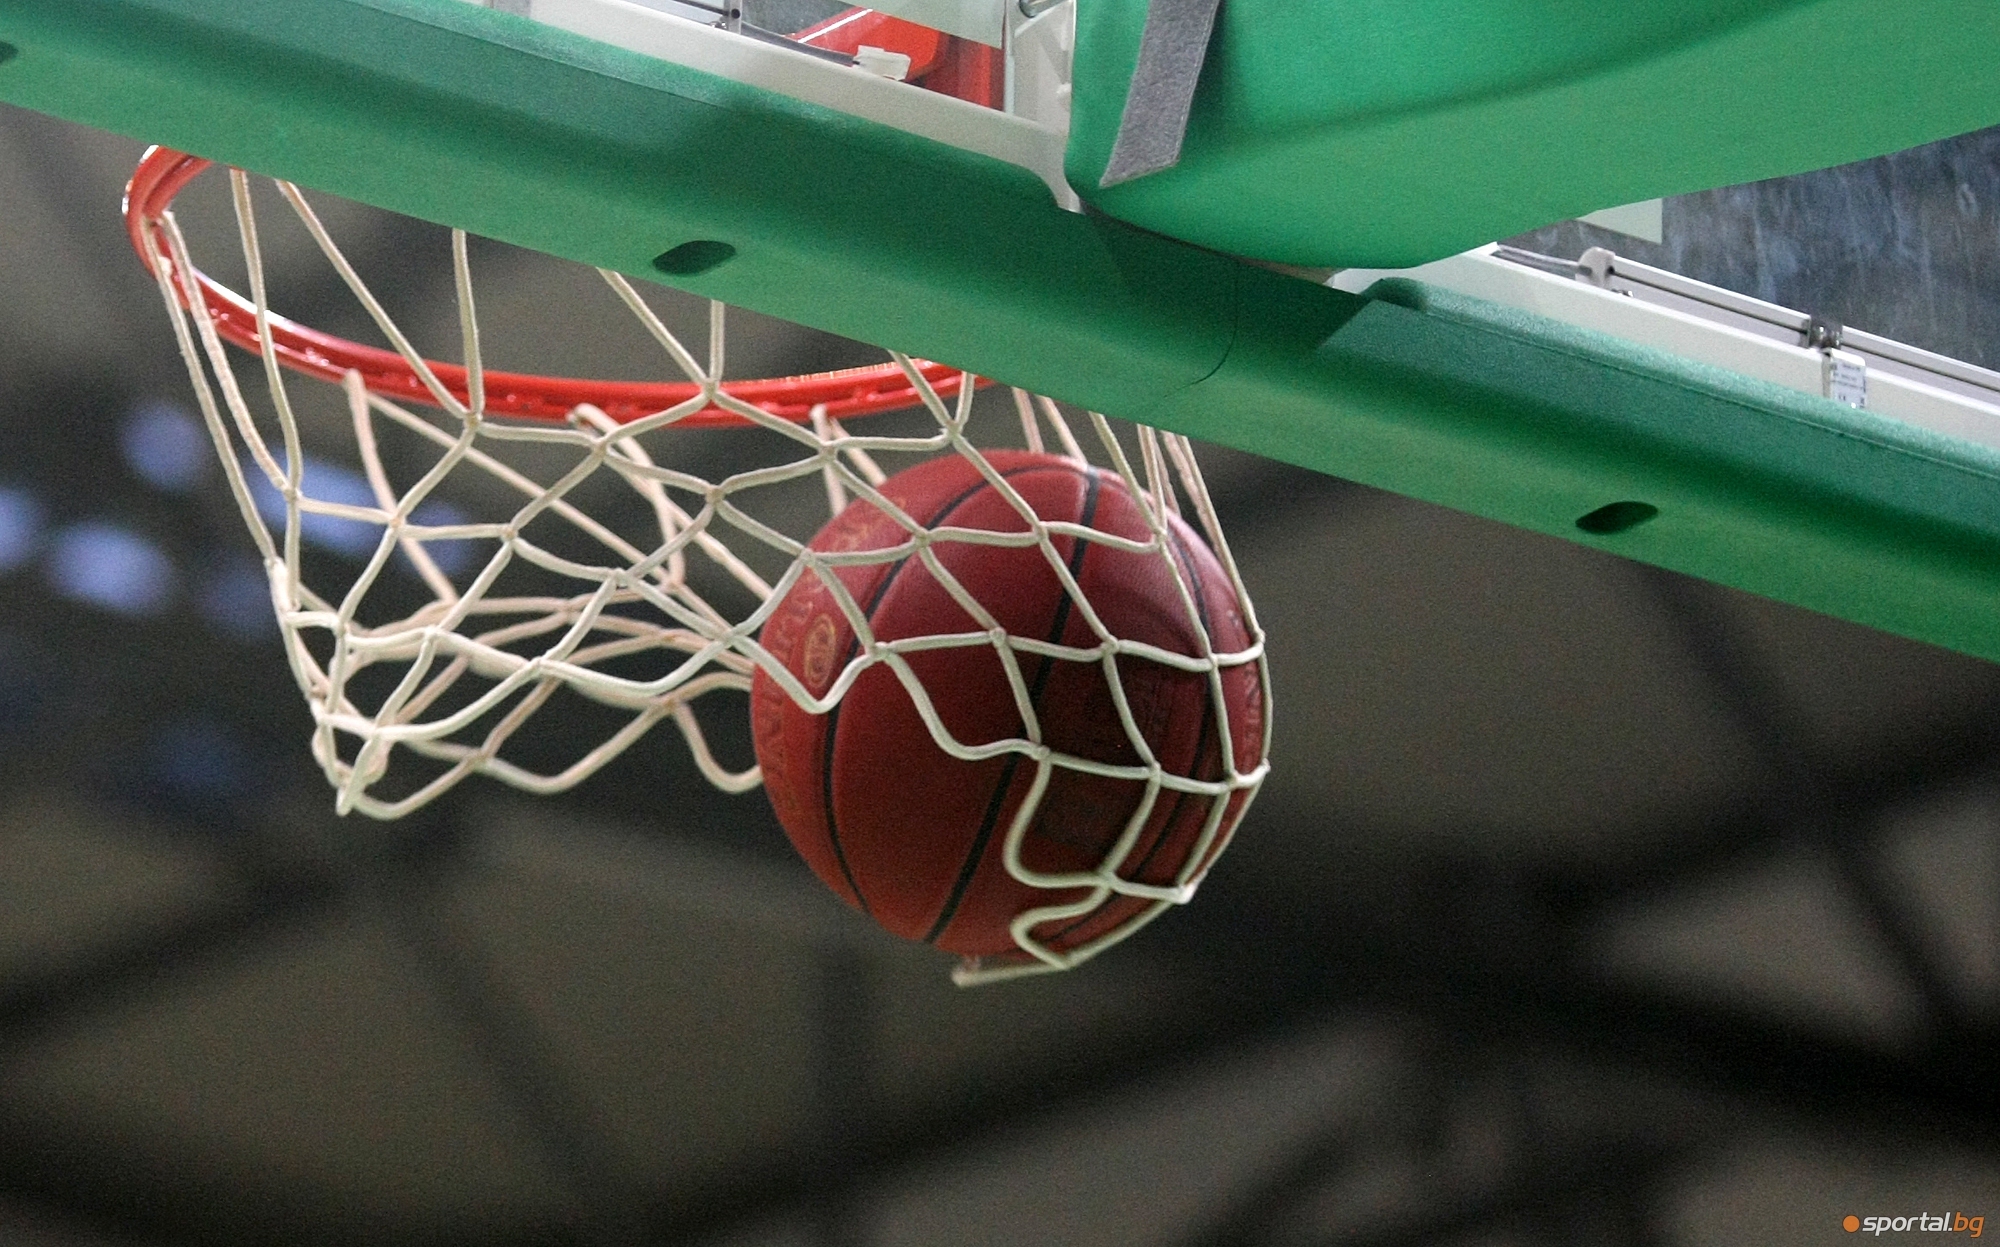 Отборът на БУБА Баскетбол (София) спечели купата на БФБаскетбол. На